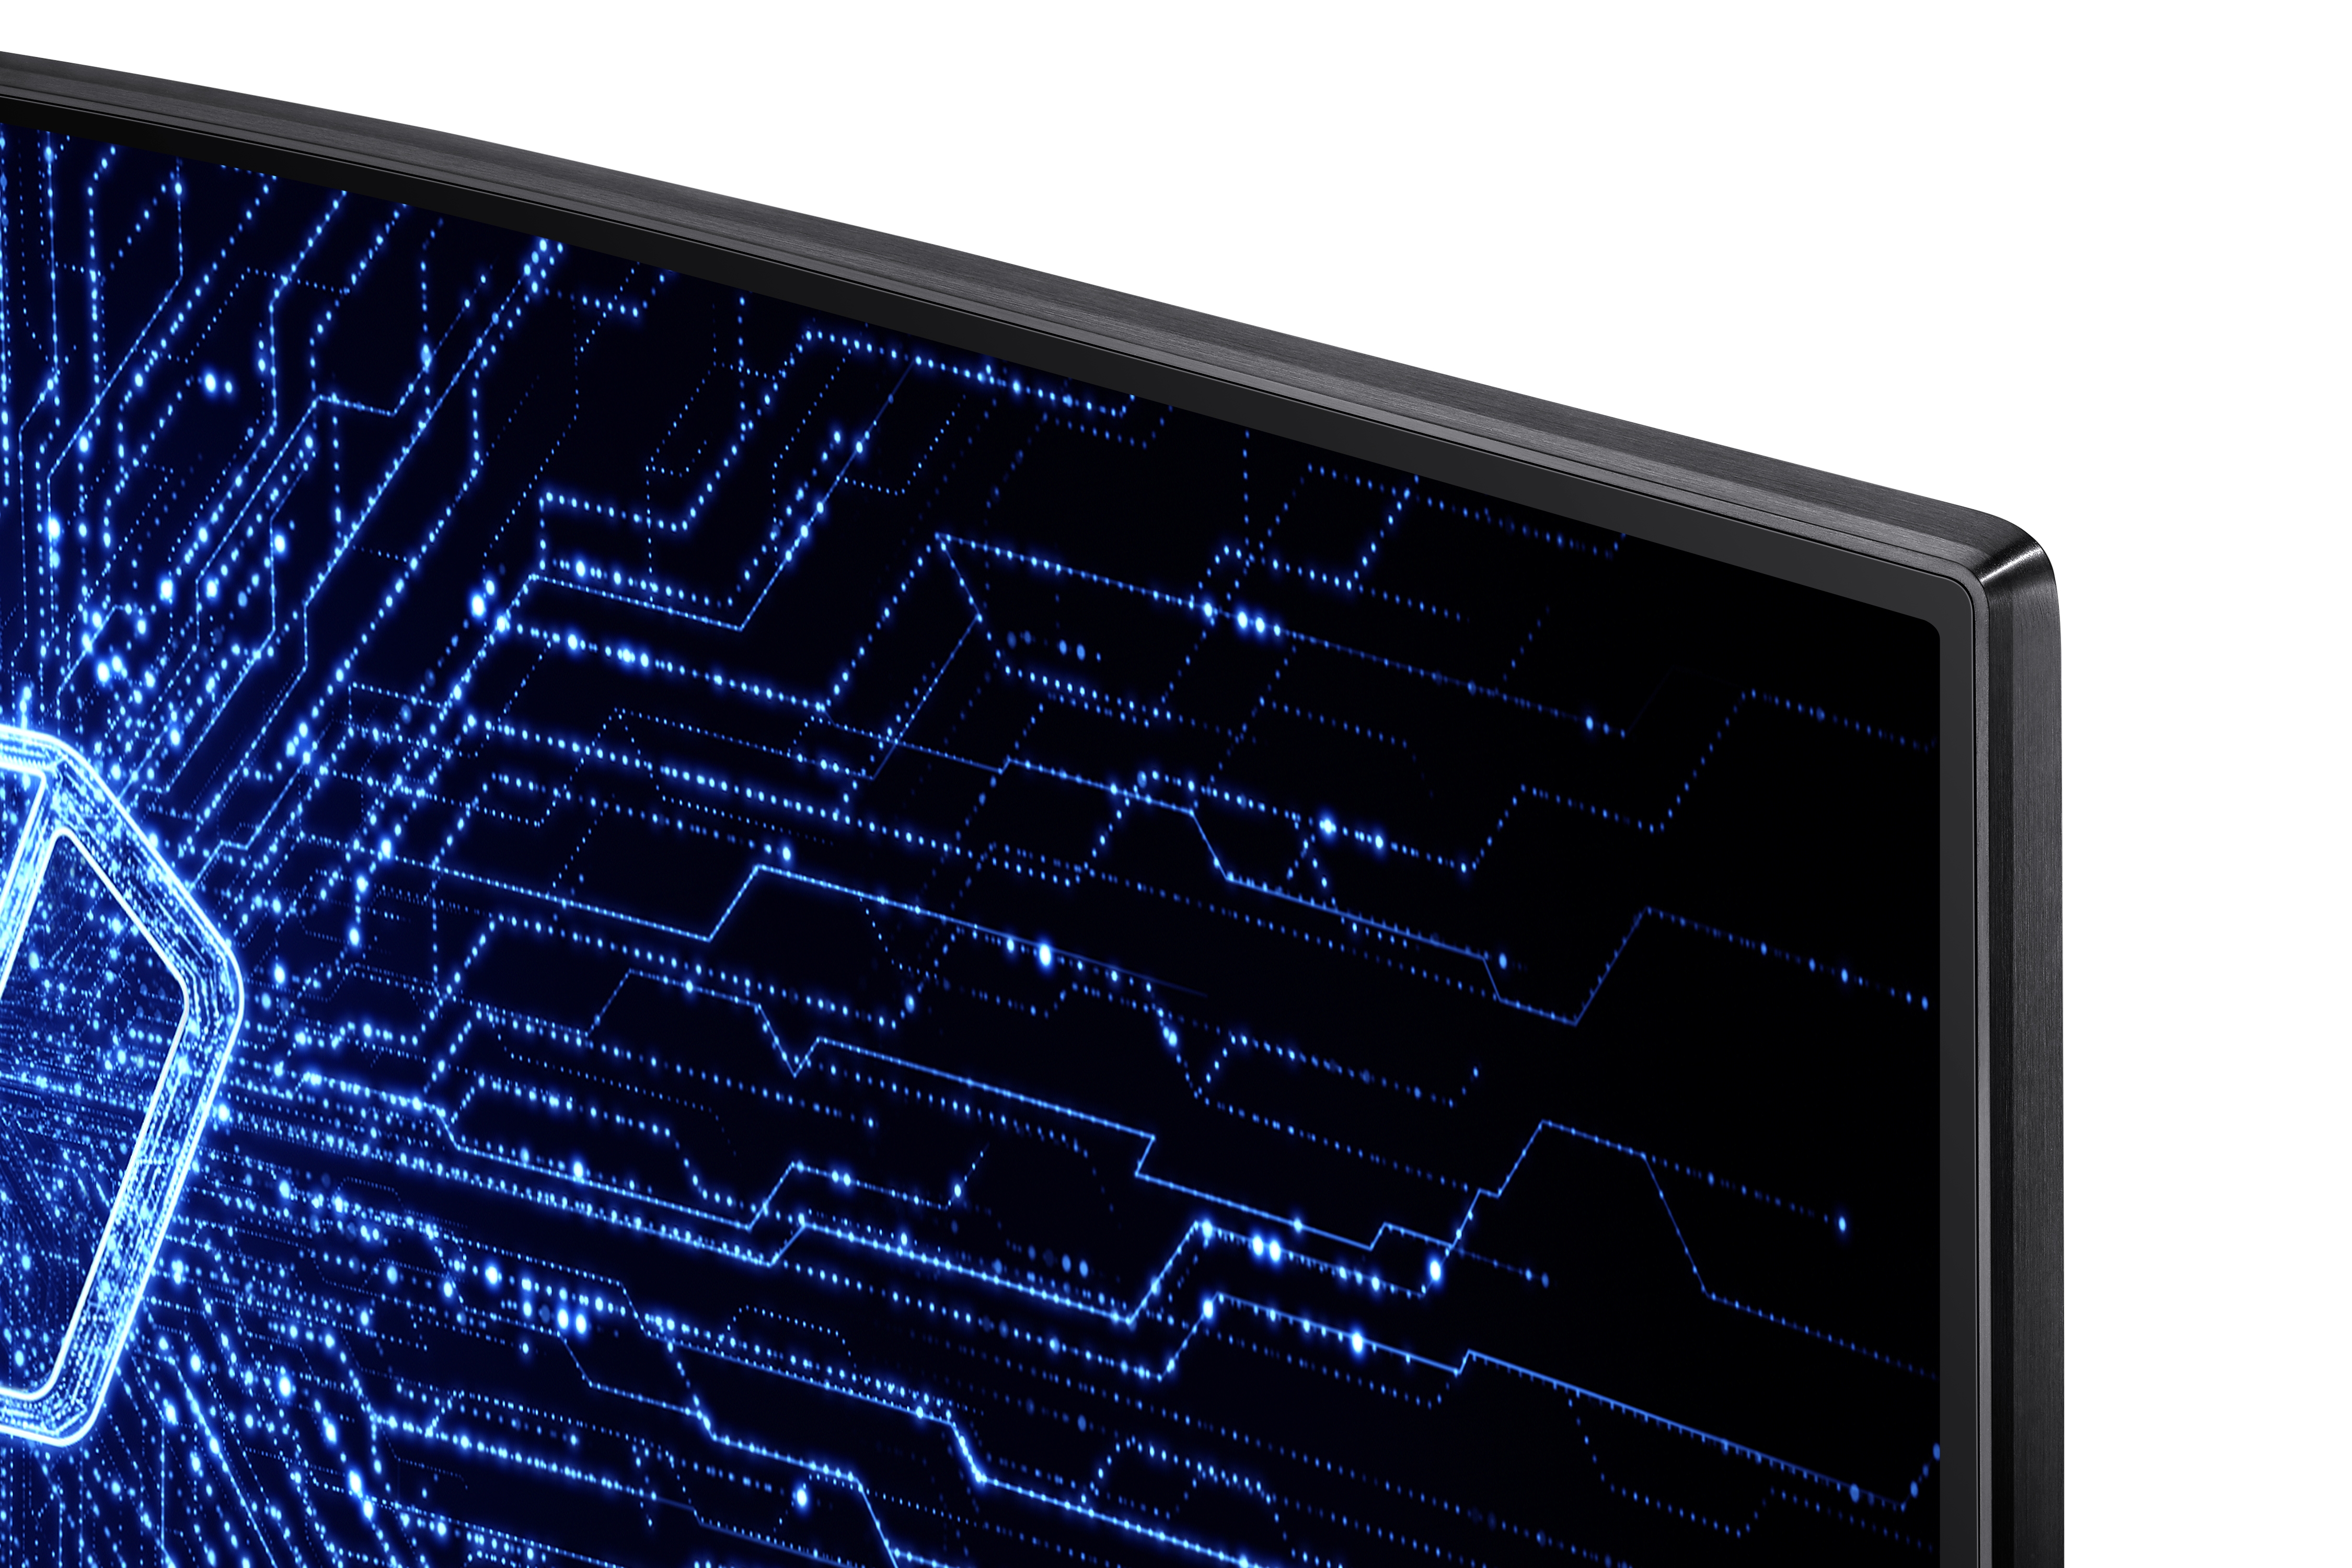 Samsung lanza el gigantesco monitor gaming de 49” ultra-panorámico C49RG9  con HDR1000, 120 Hz y compatible con G-Sync y FreeSync2 por 1399€